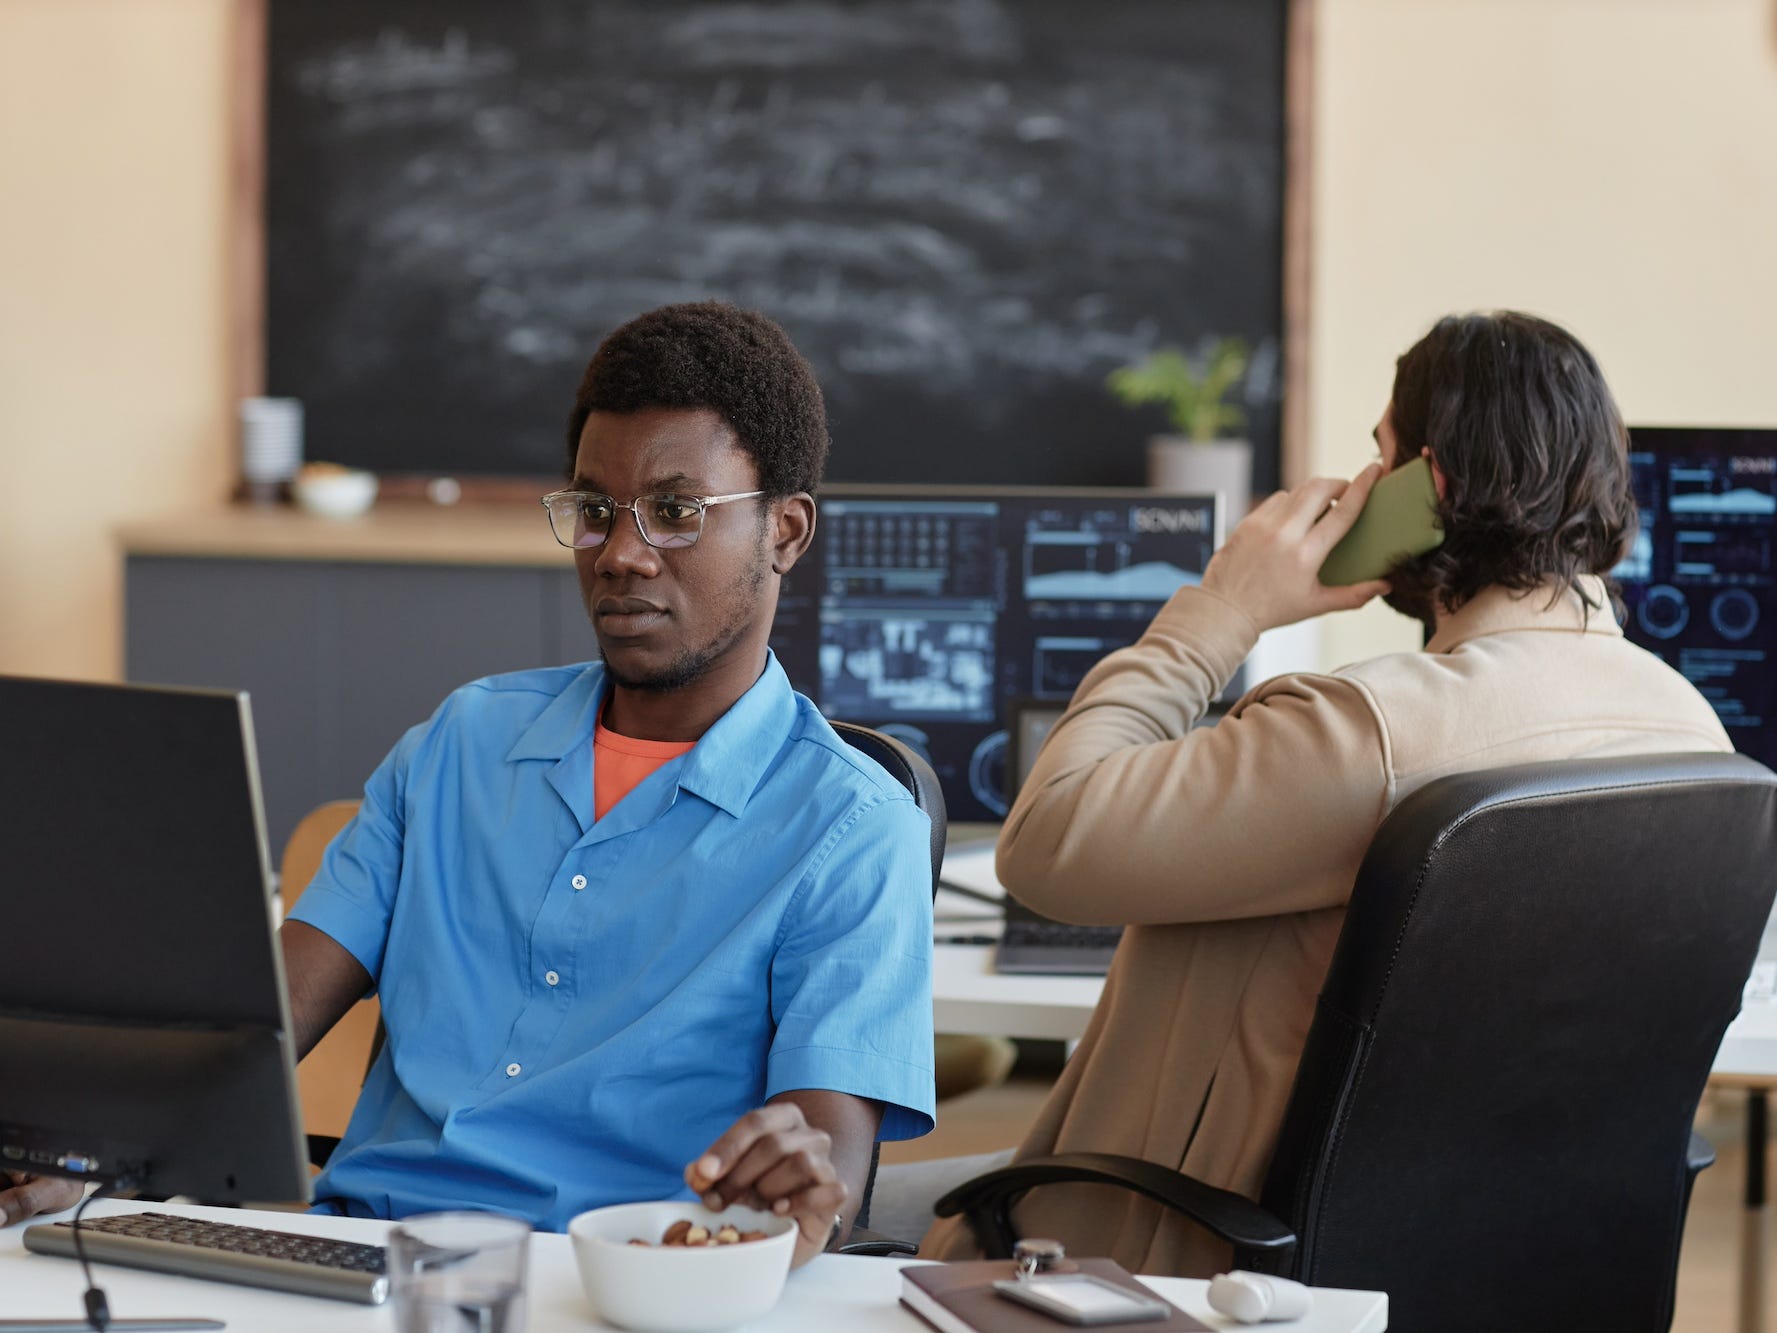 Ein Ingenieur arbeitet und schaut auf einen Computer, während eine andere Person telefoniert